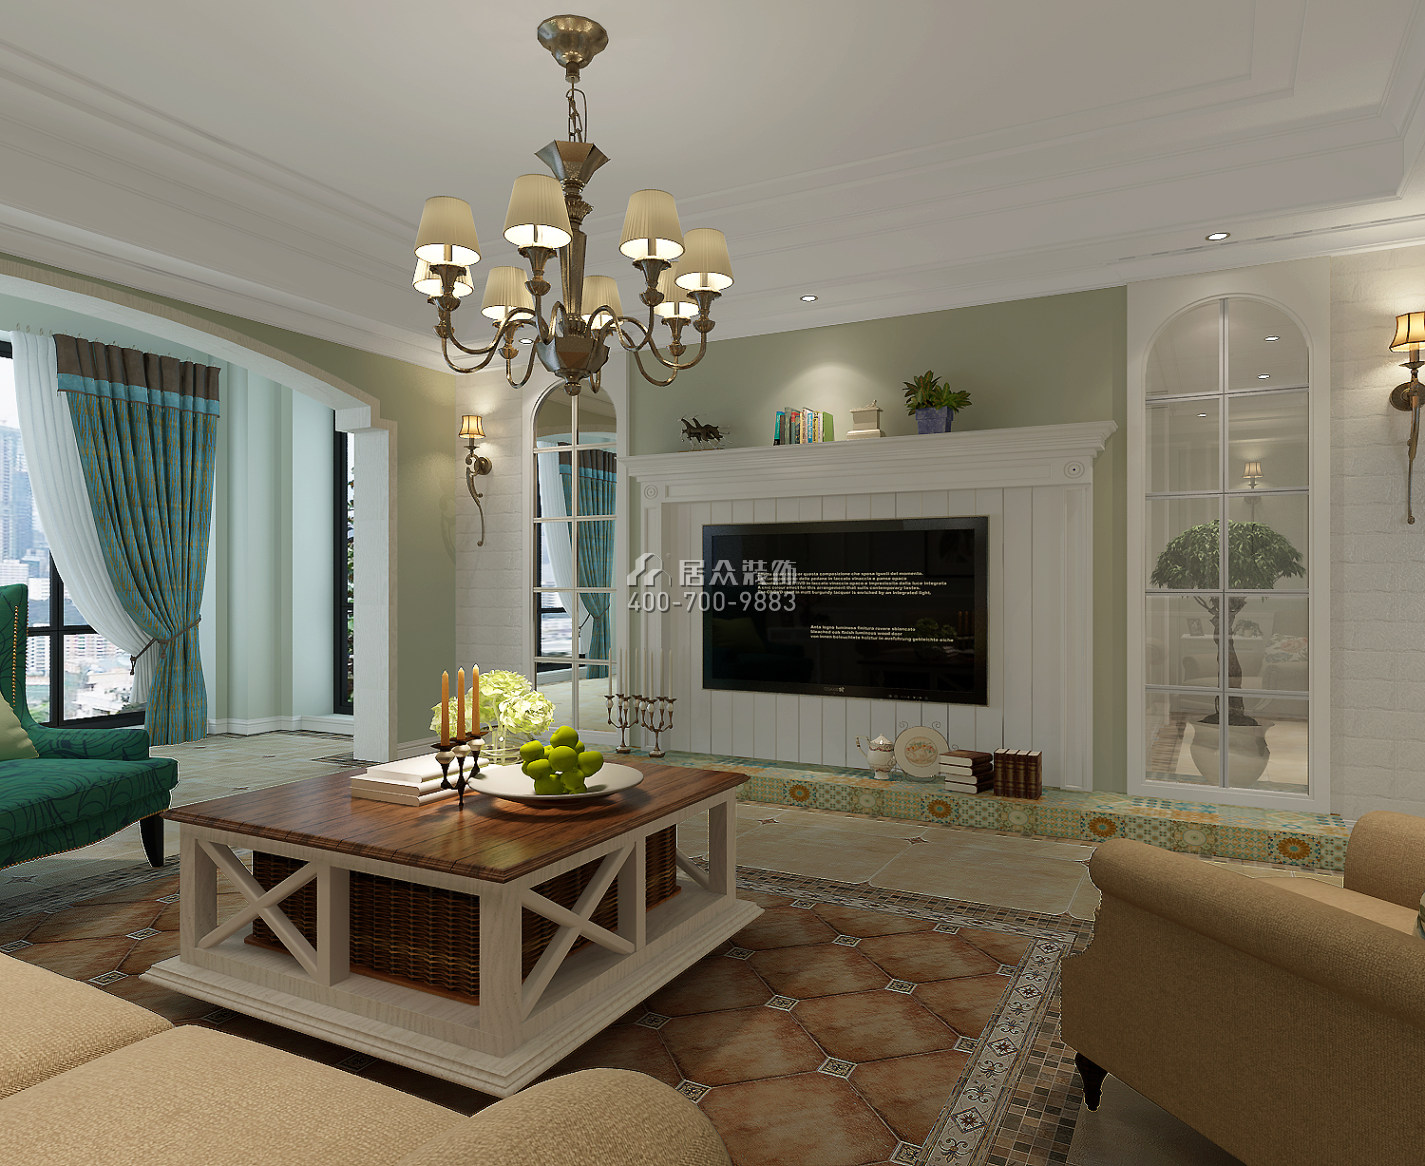 金城苑145平方米美式風格平層戶型客廳裝修效果圖